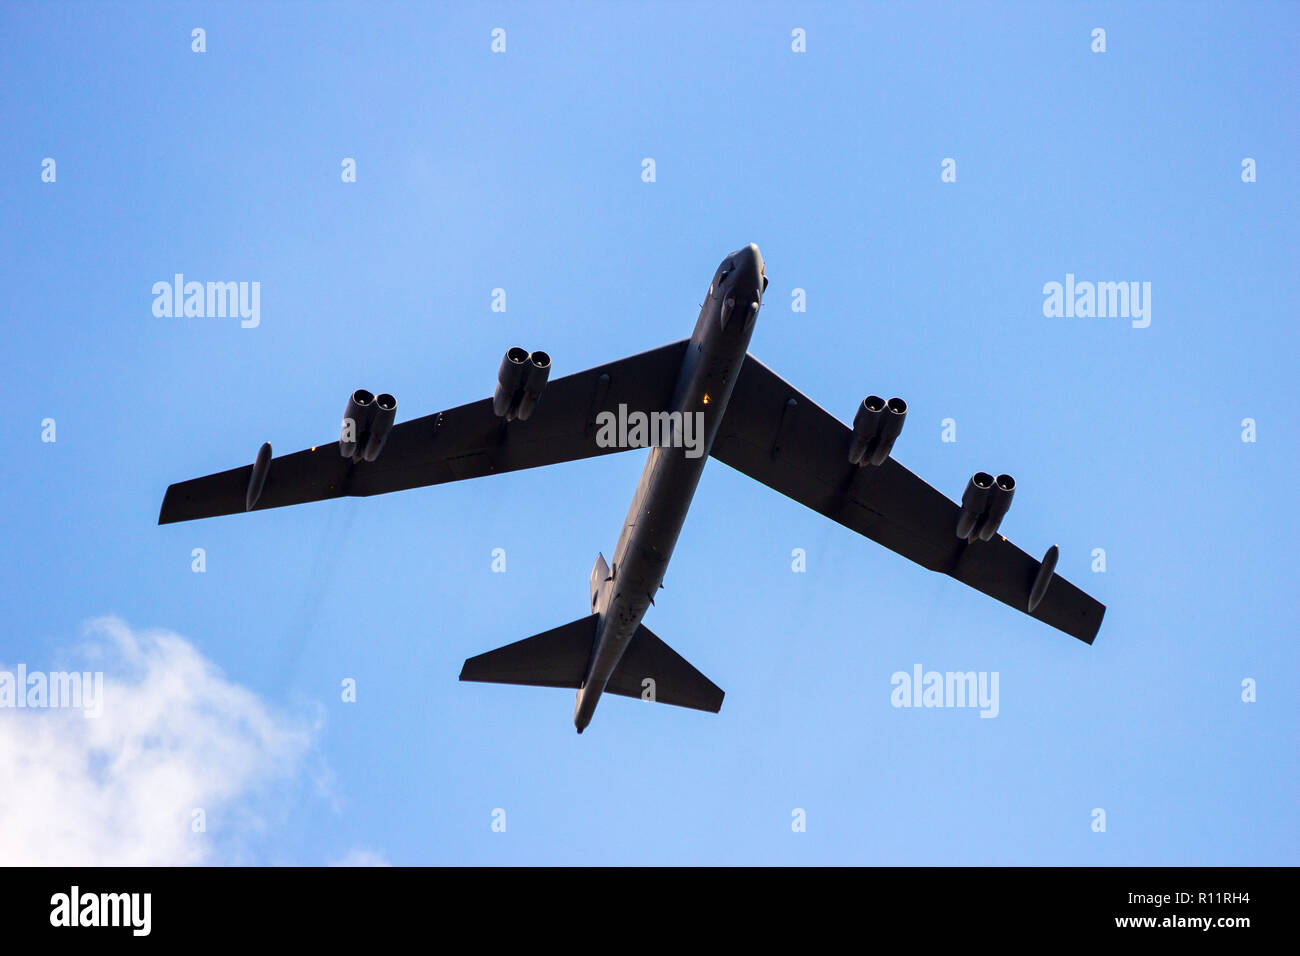 KLEINE-BROGEL, BELGIQUE - Sep 16, 2012 : United States Air Force B-52 Stratofortress longe Portée des bombardiers stratégiques en vol au dessus de Kleine Brogel Banque D'Images